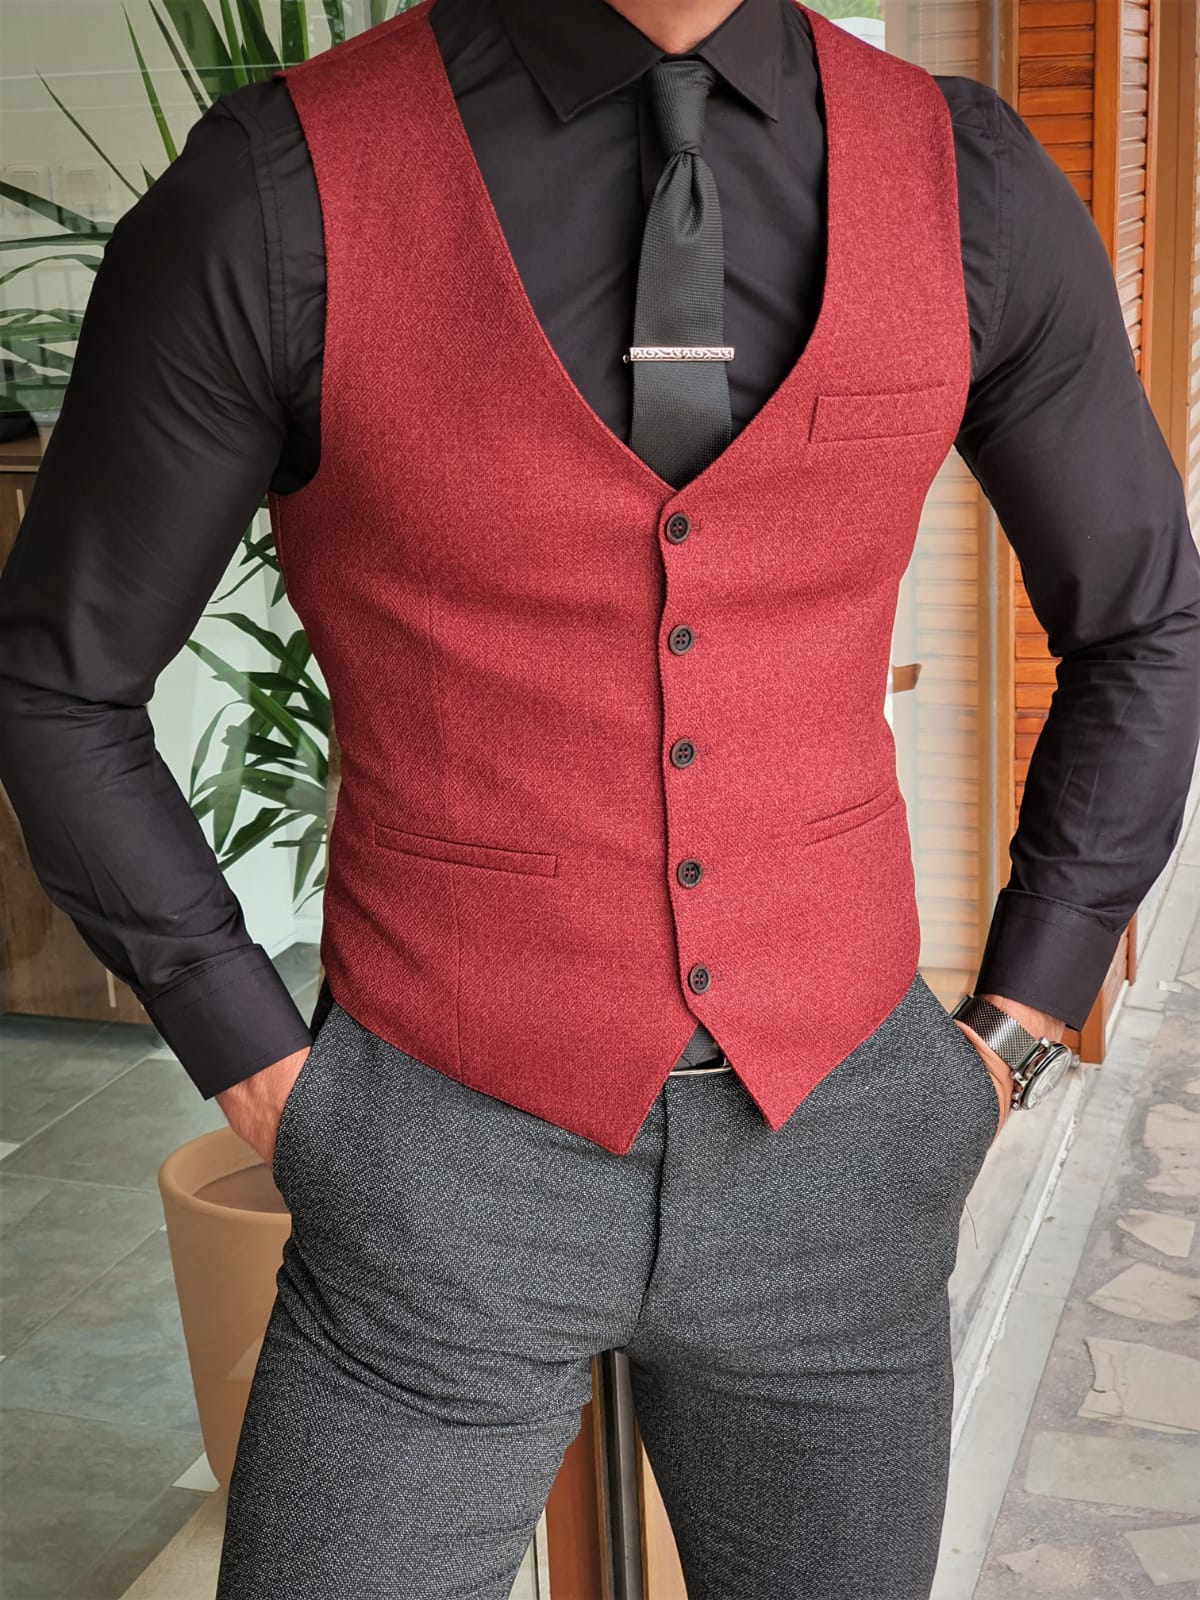 Classic Suit Vest in Cherry Red  CheapNecktiescom